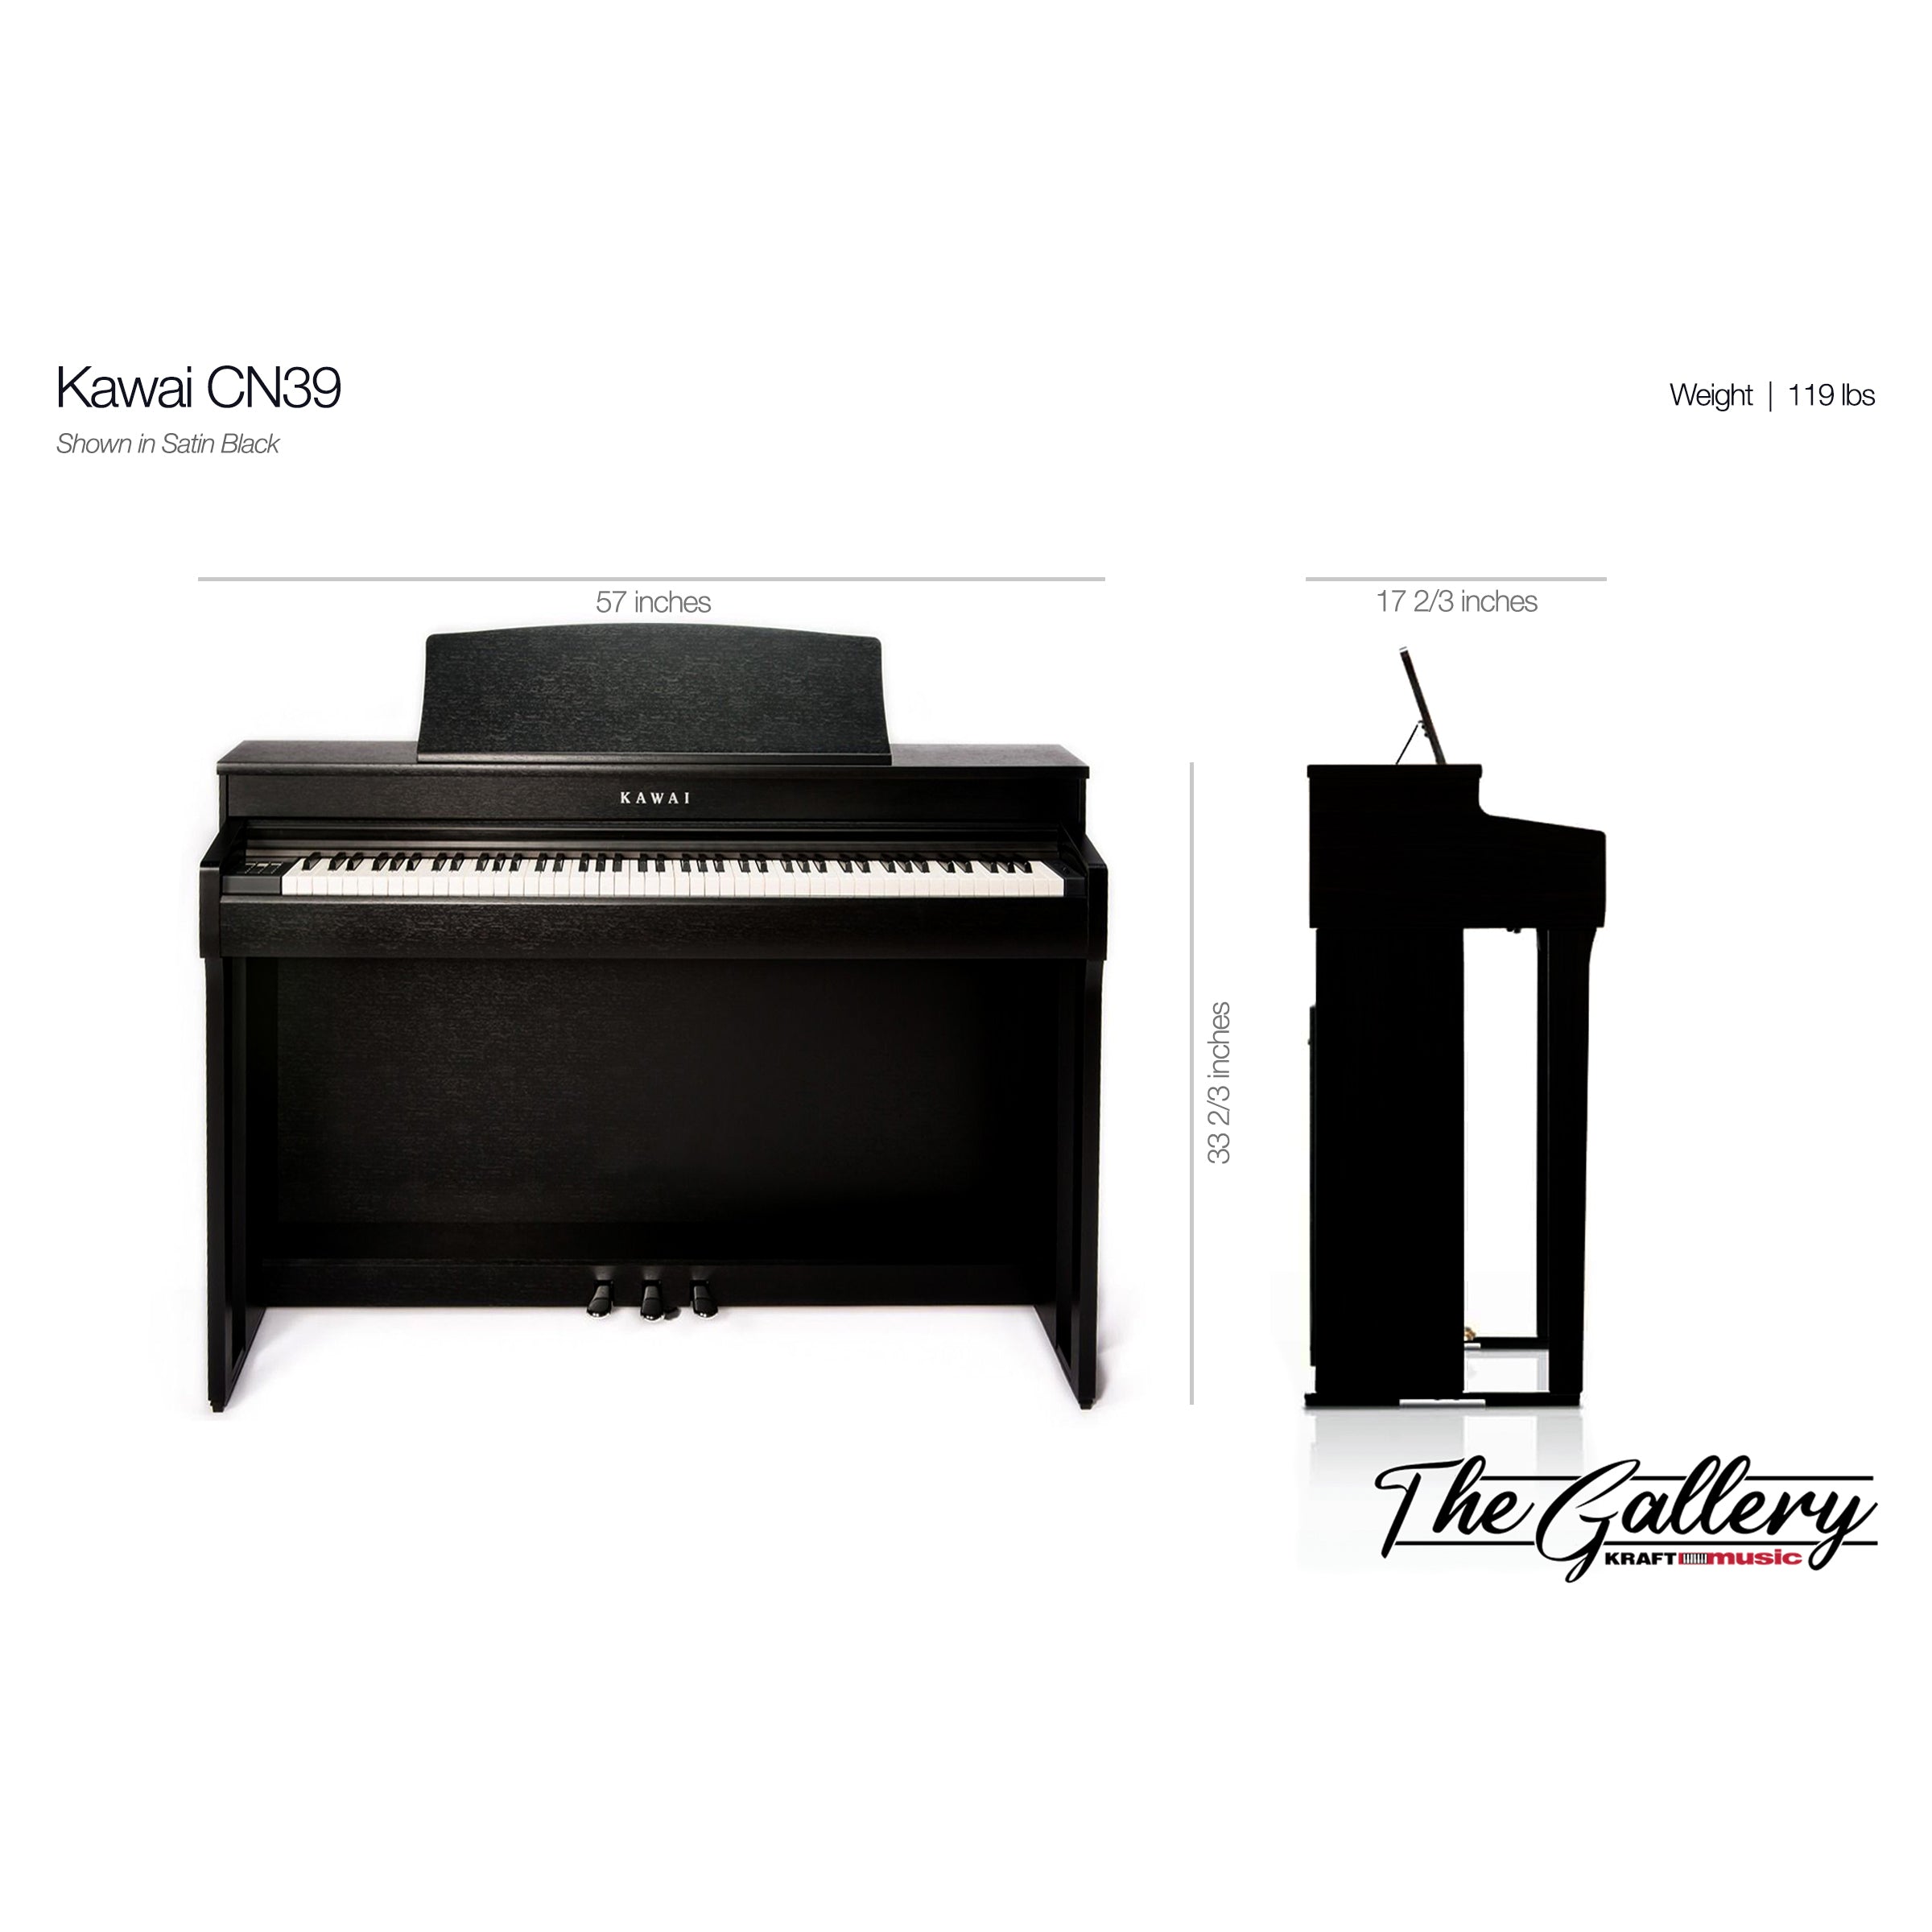 Kawai CN39 Digital Piano - Dimensions